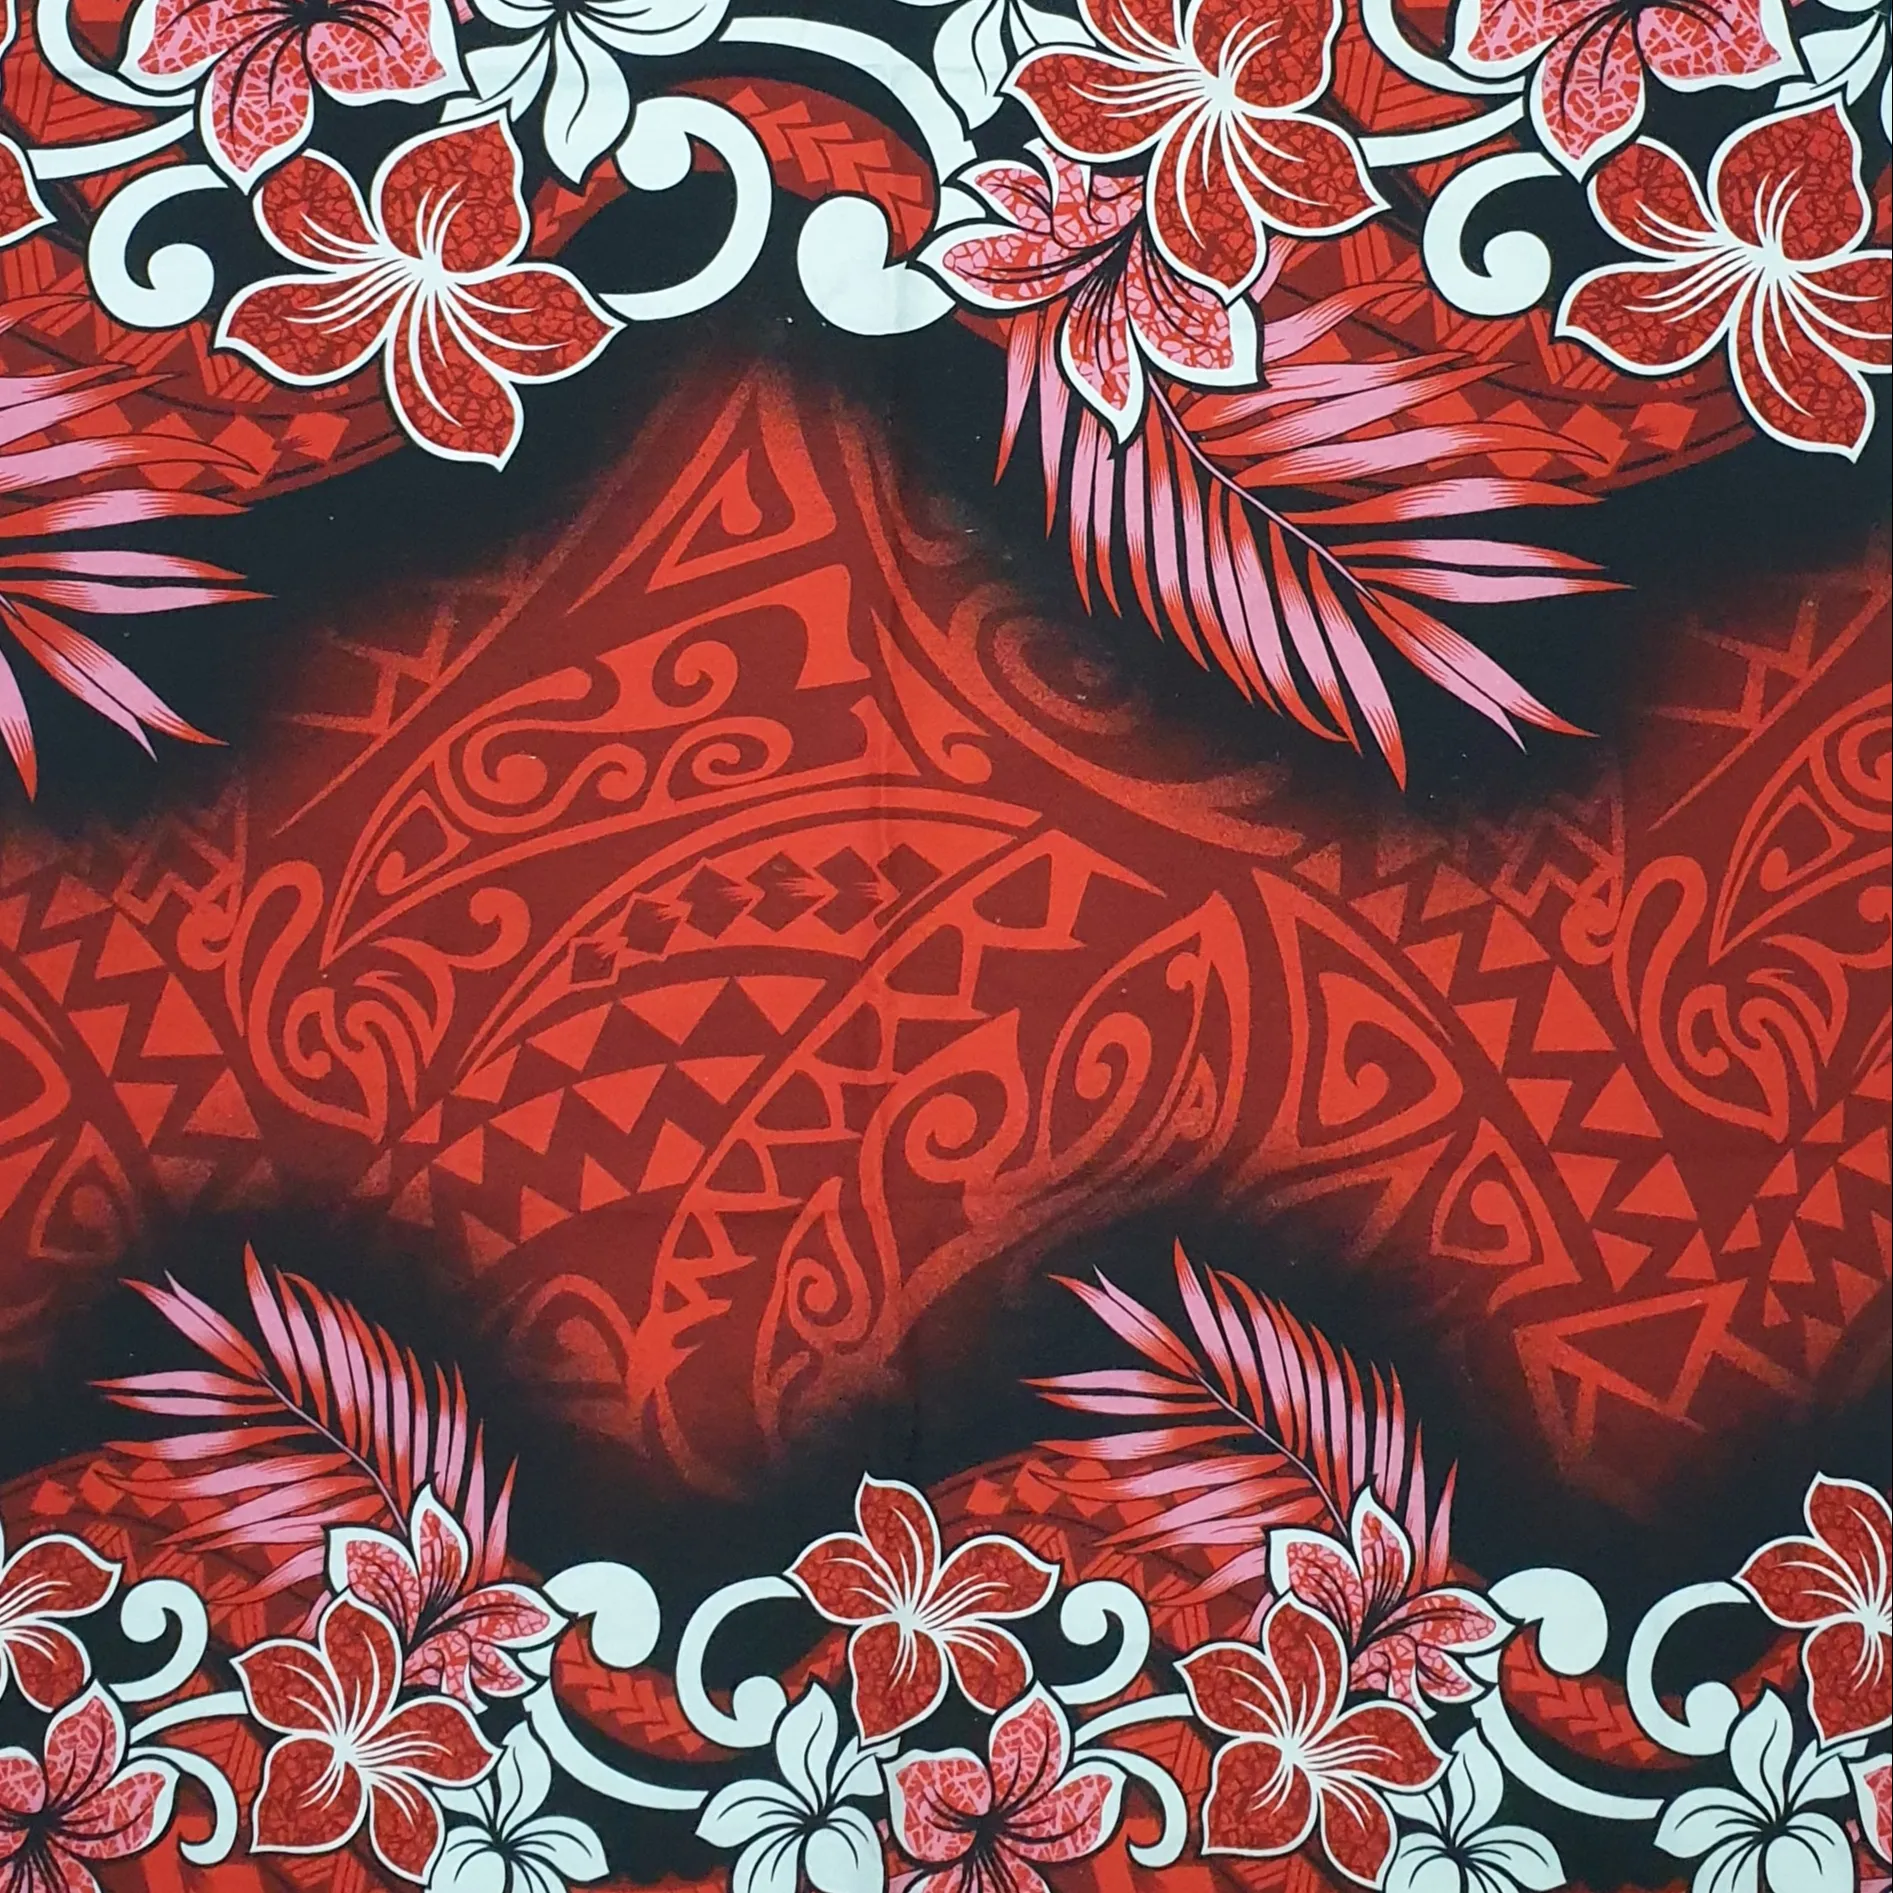 100% hochwertige Baumwolle 40*40 Stoff Samoan Tribal Digitaldruck in hellen und kräftigen Farben erhältlich